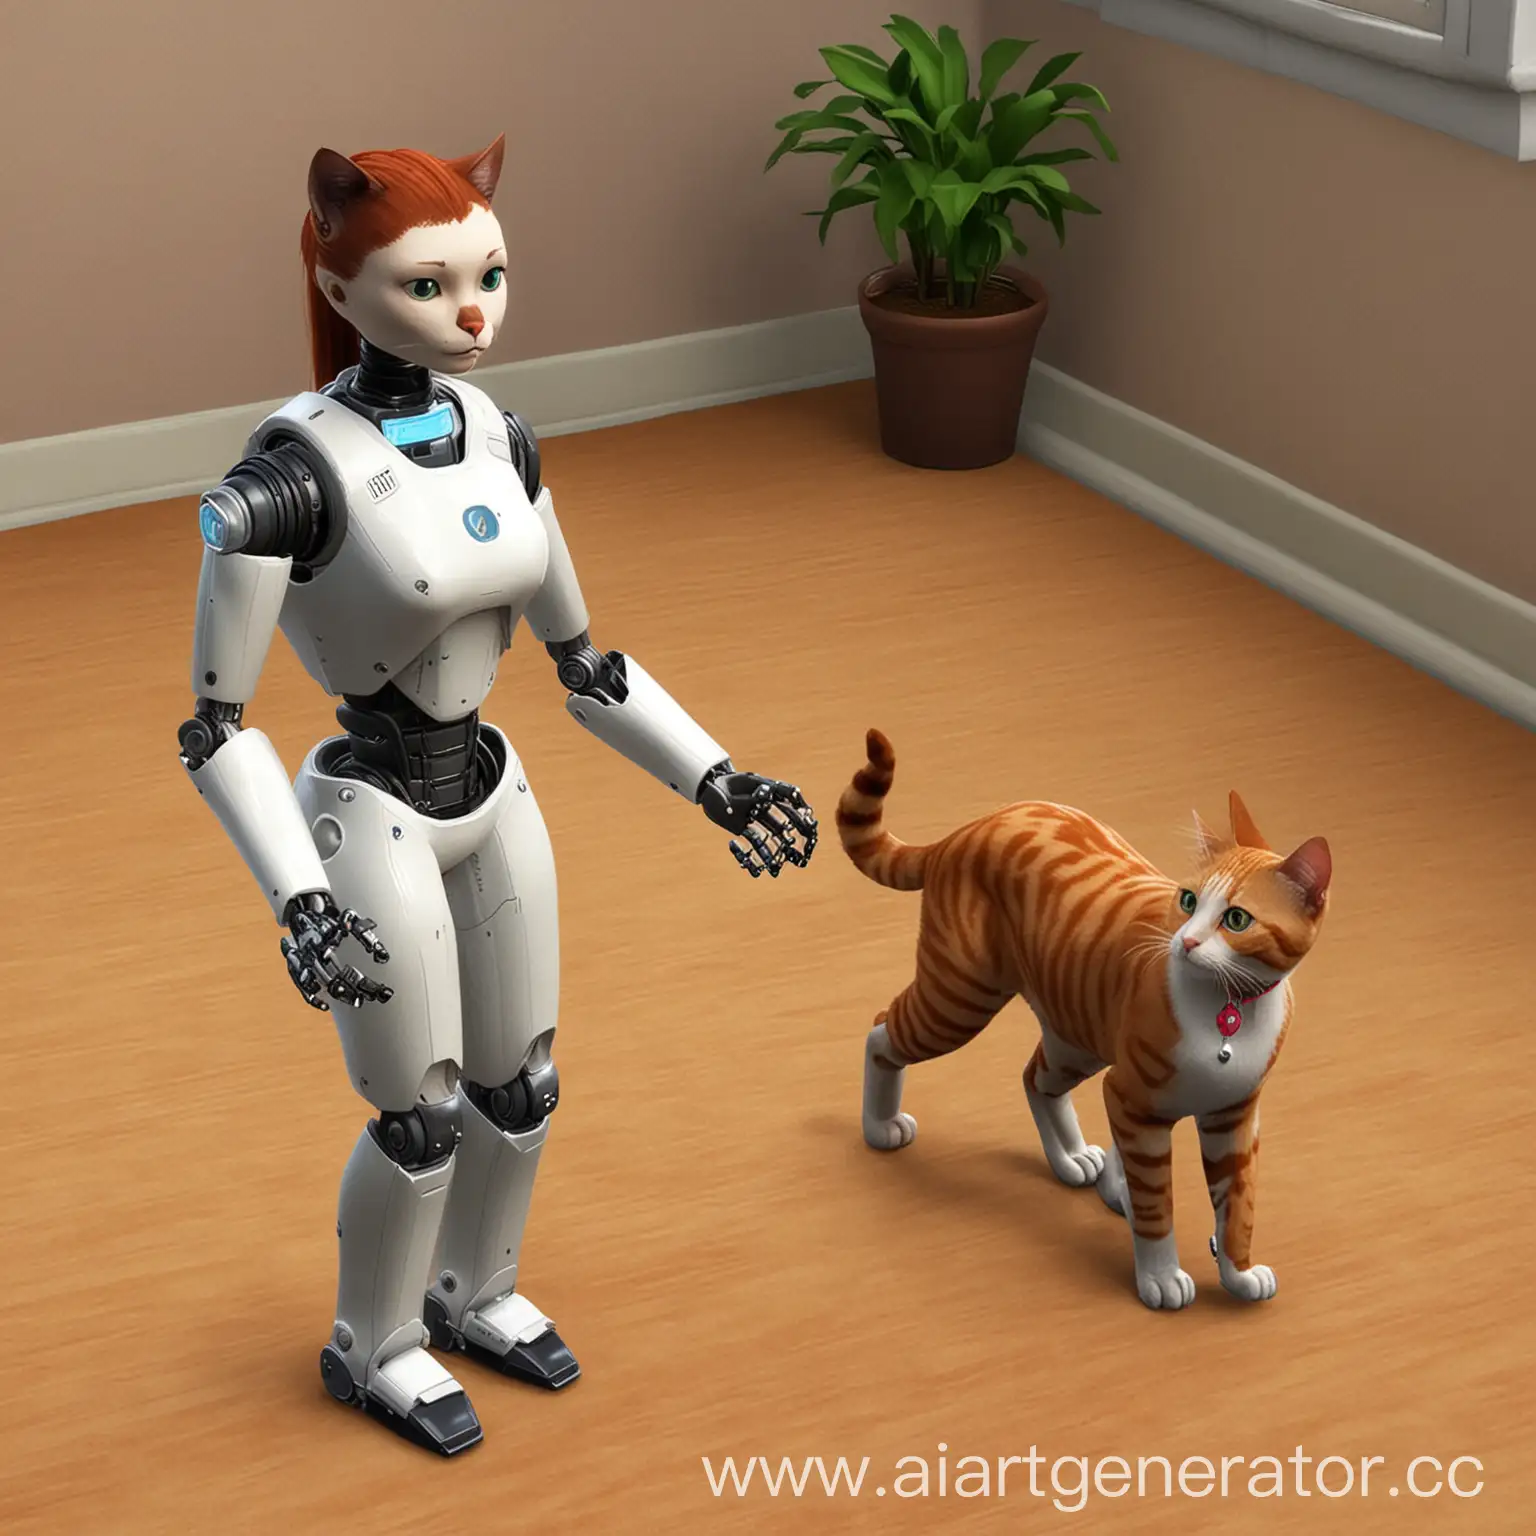 Робот играет с котиком как в SIMS